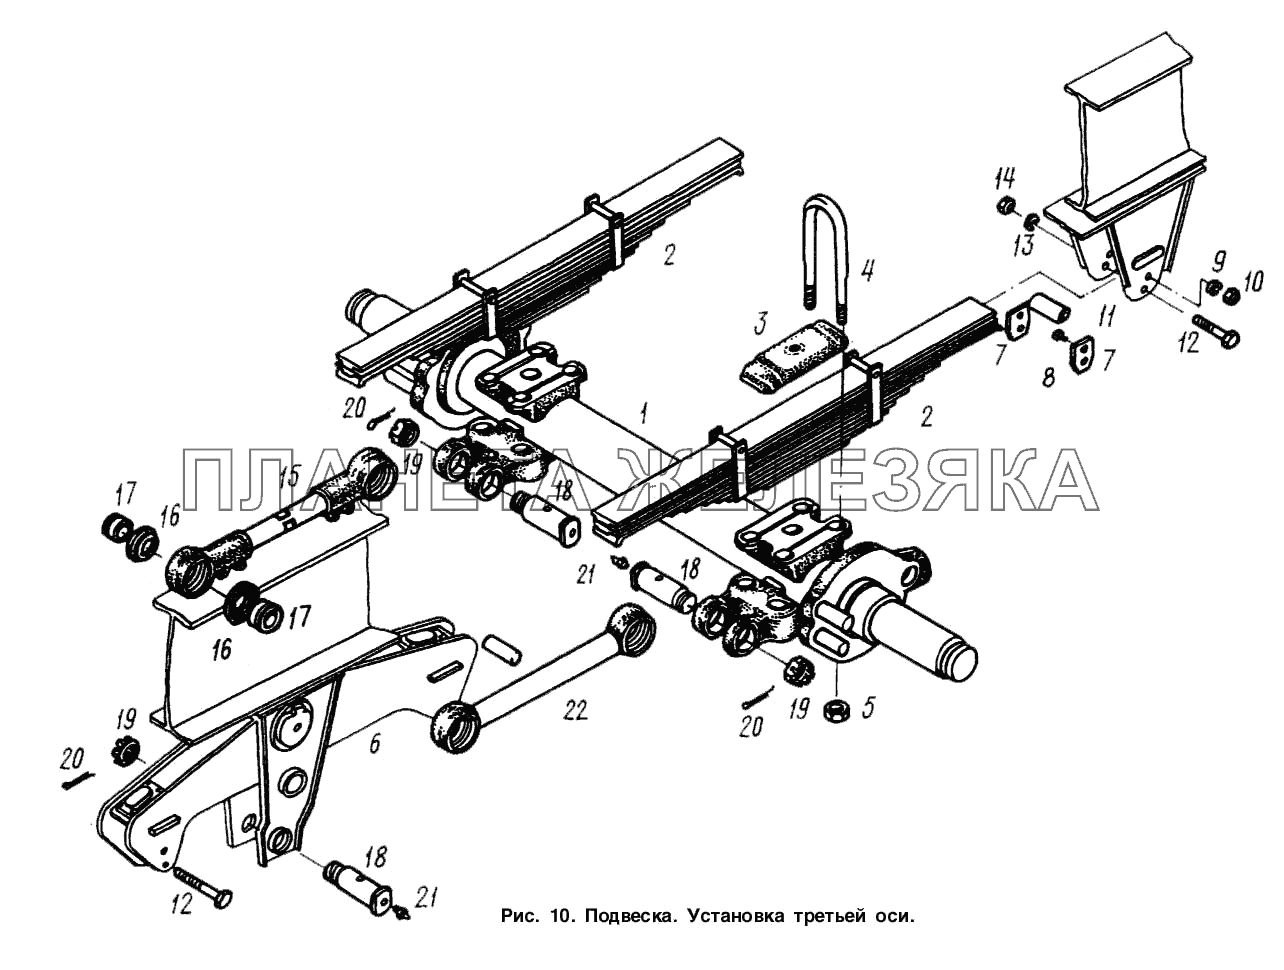 Подвеска. Установка третьей оси МАЗ-9758-30